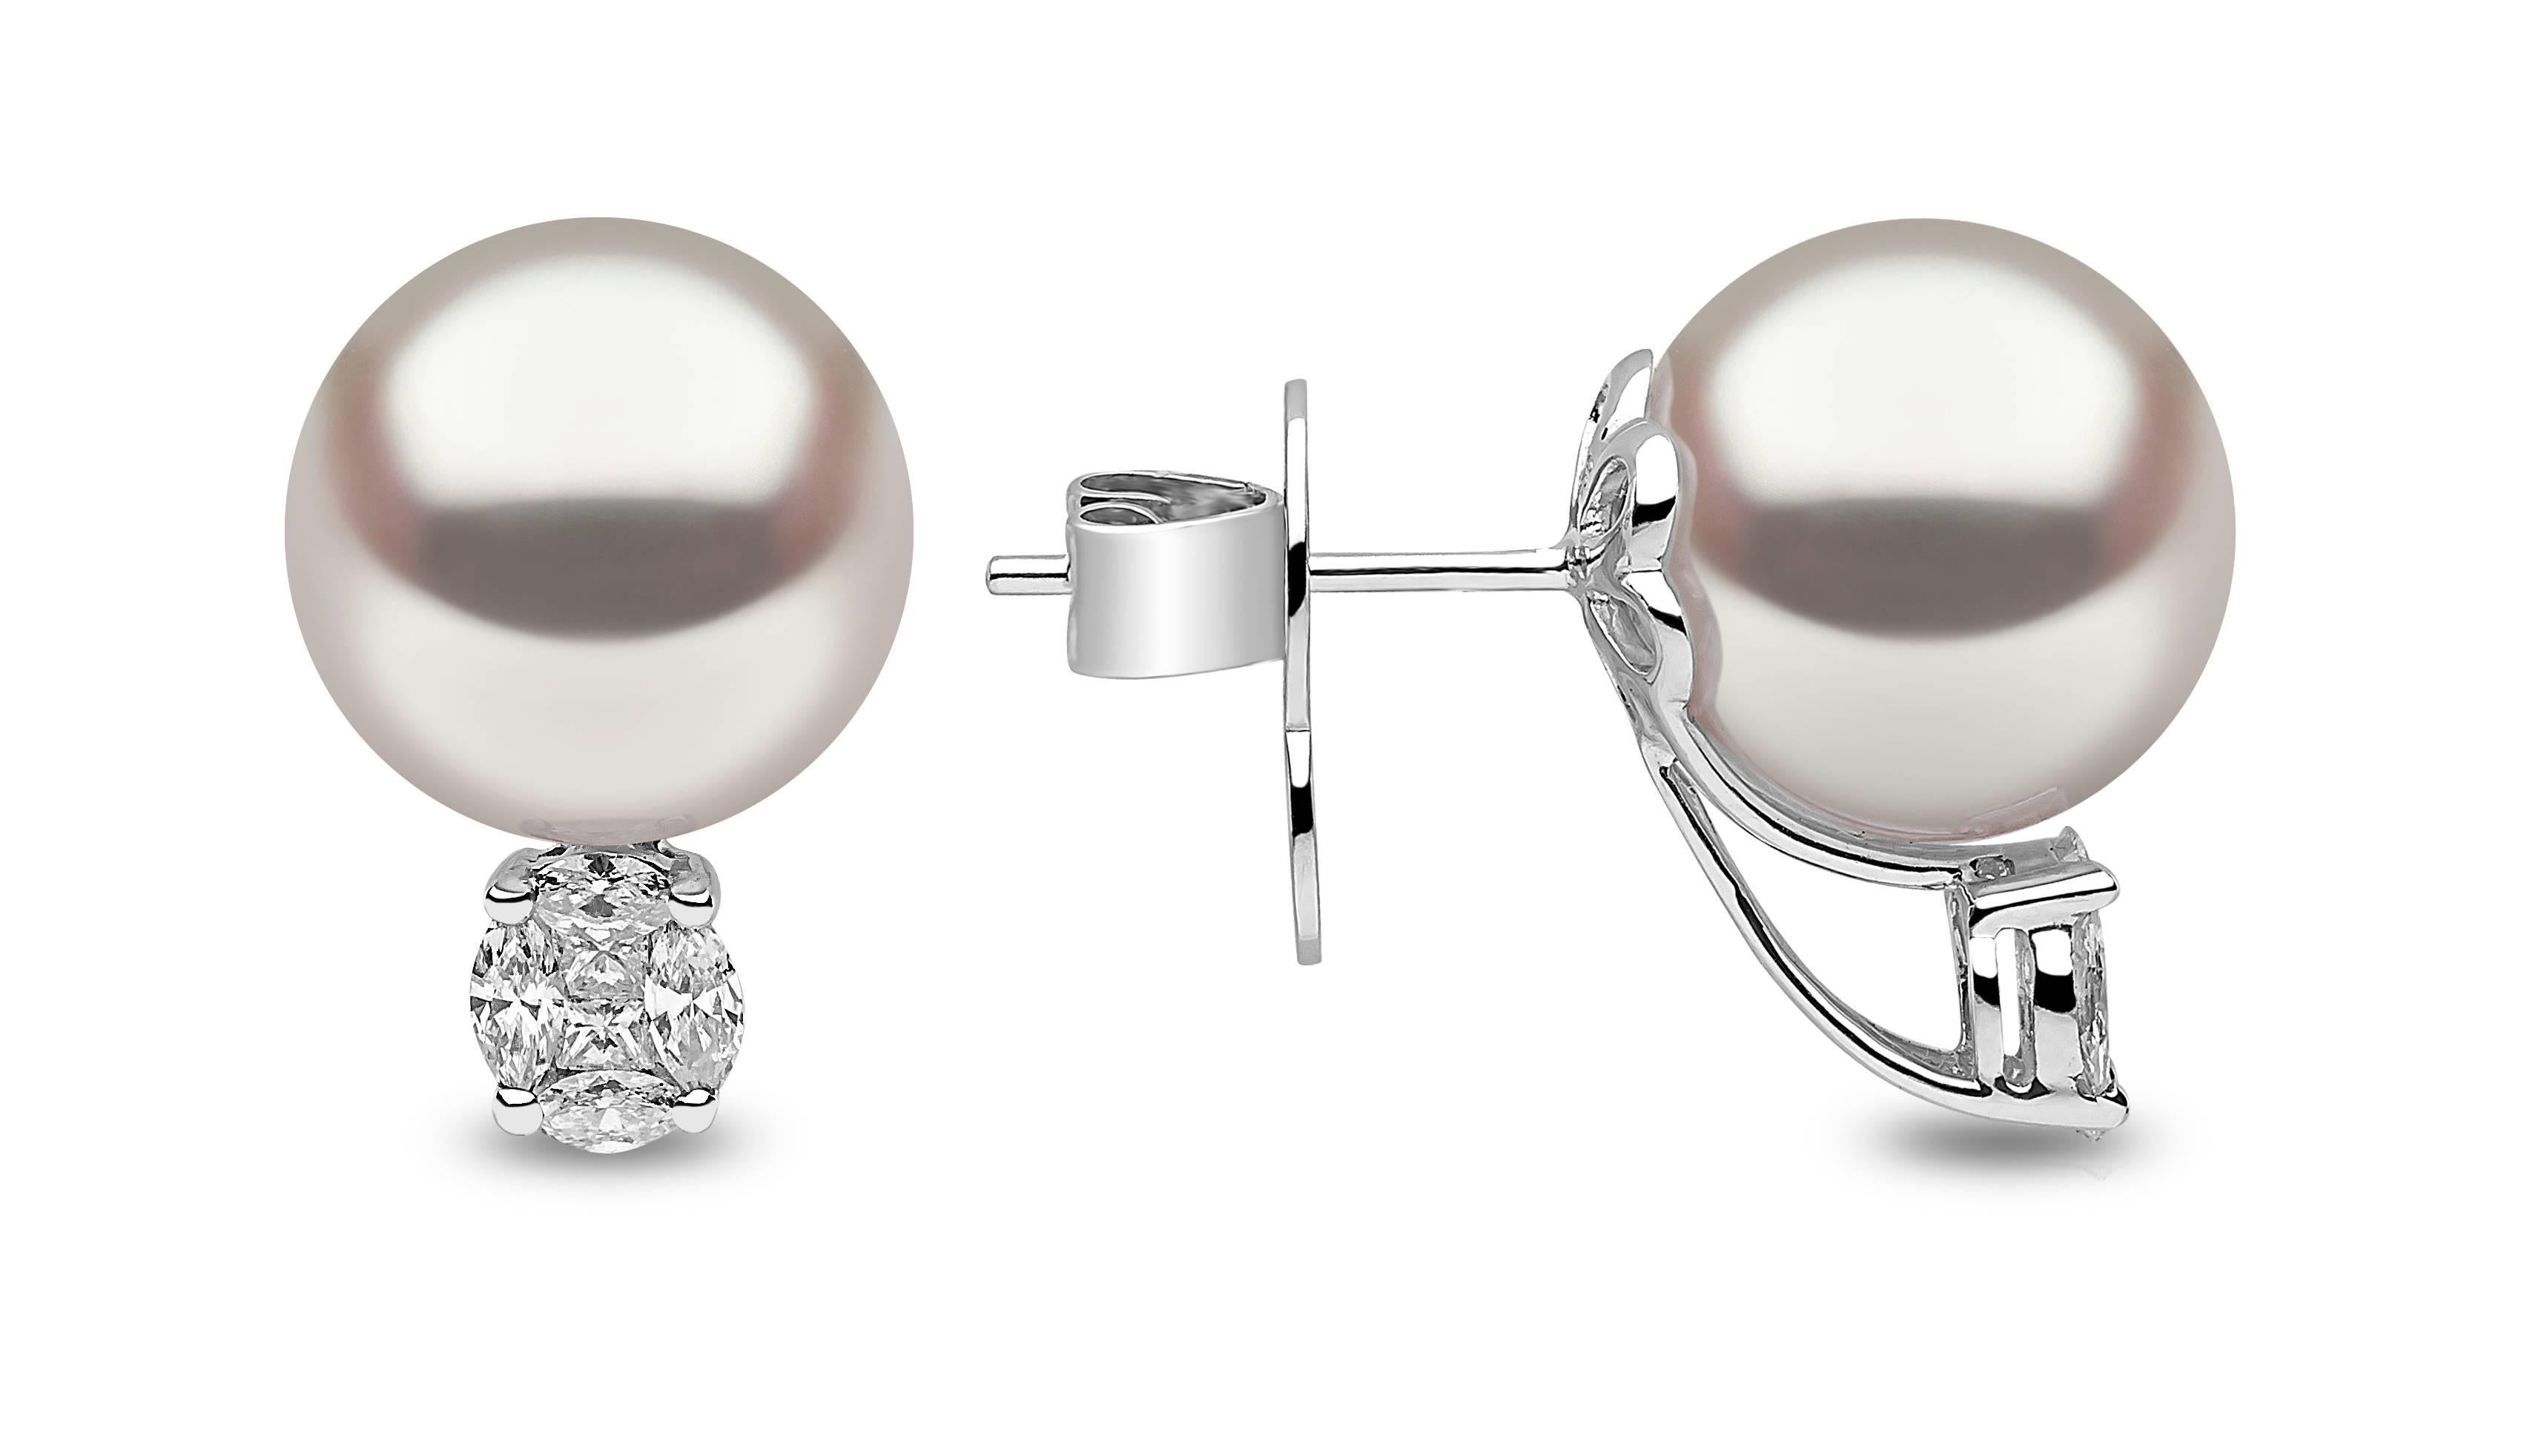 Das traditionelle Perlenschmuckstück wird auf den Kopf gestellt,  diese luxuriösen australischen Südseeperlen wurden über einem Cluster aus hübschen weißen Diamanten gefasst. 

Kombinieren Sie sie mit einem Anhänger aus Südseeperlen und Diamanten